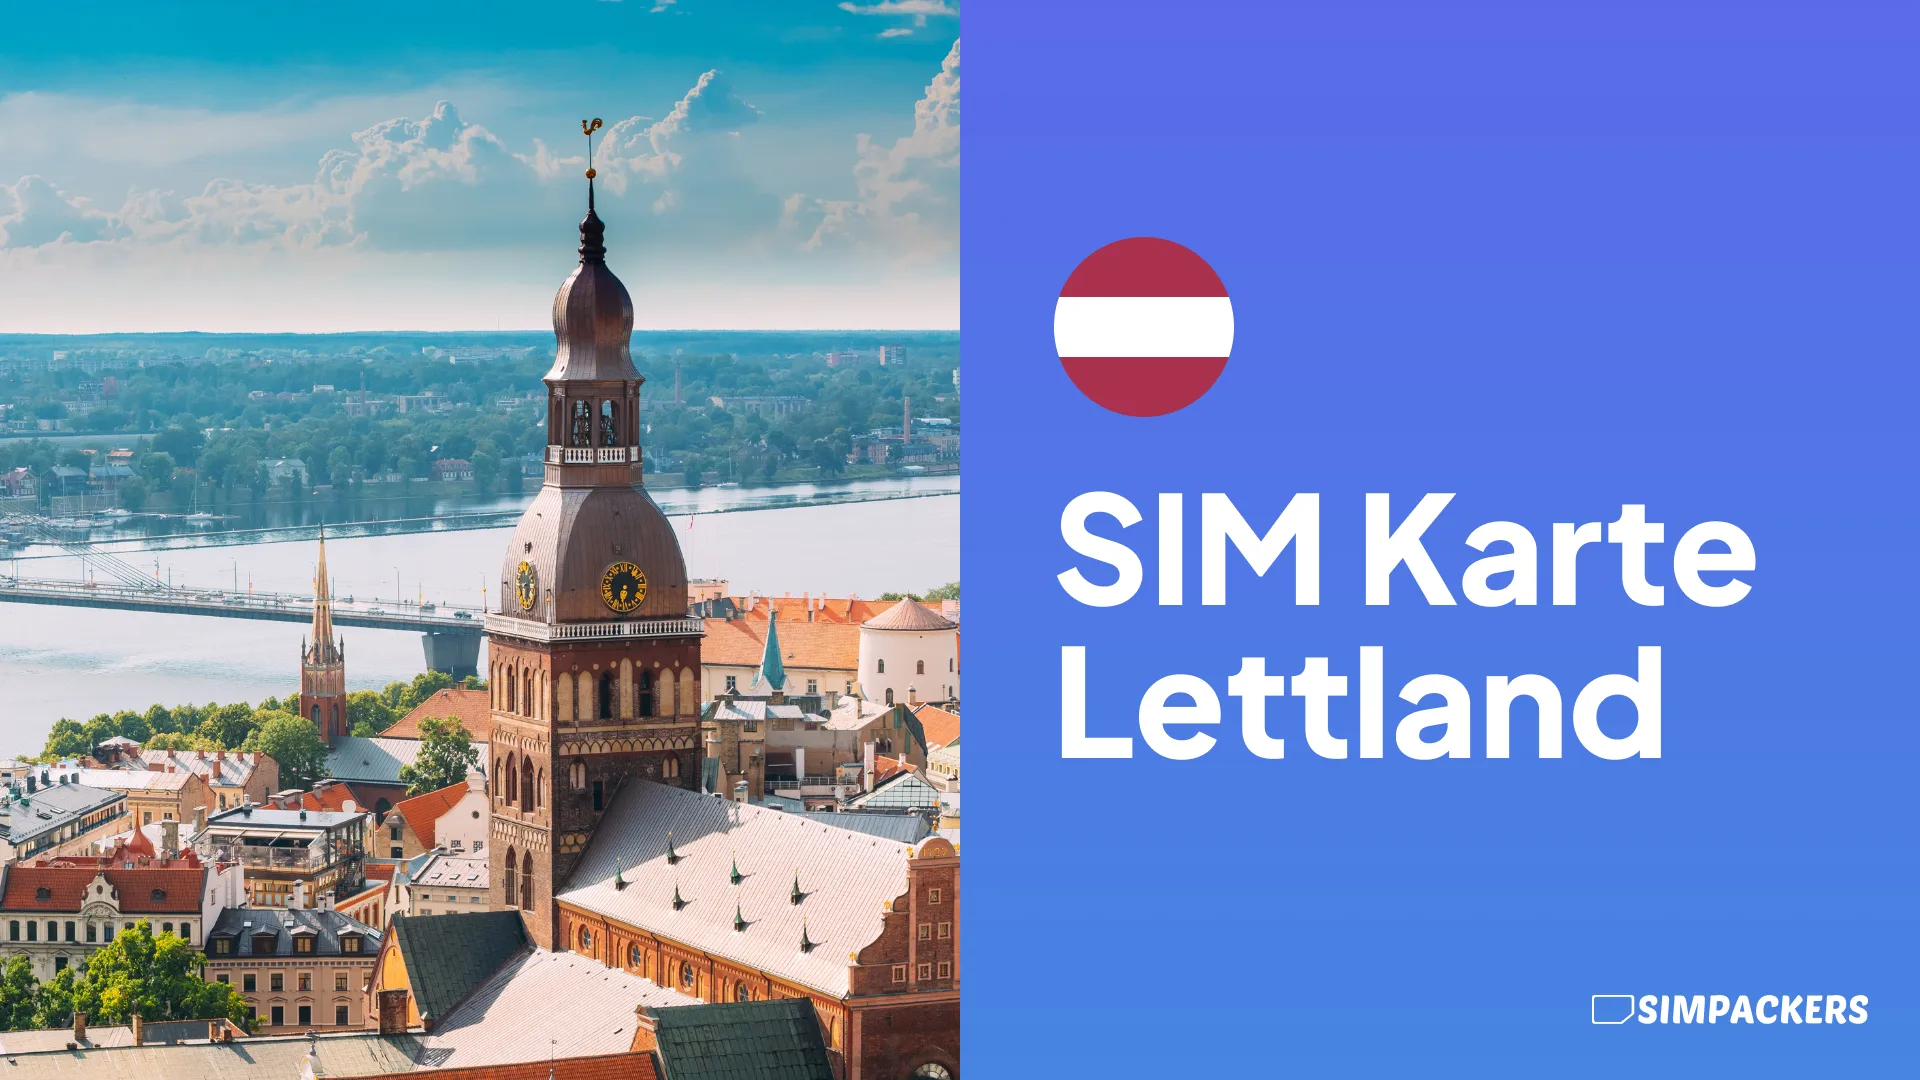 DE/FEATURED_IMAGES/sim-karte-lettland.webp